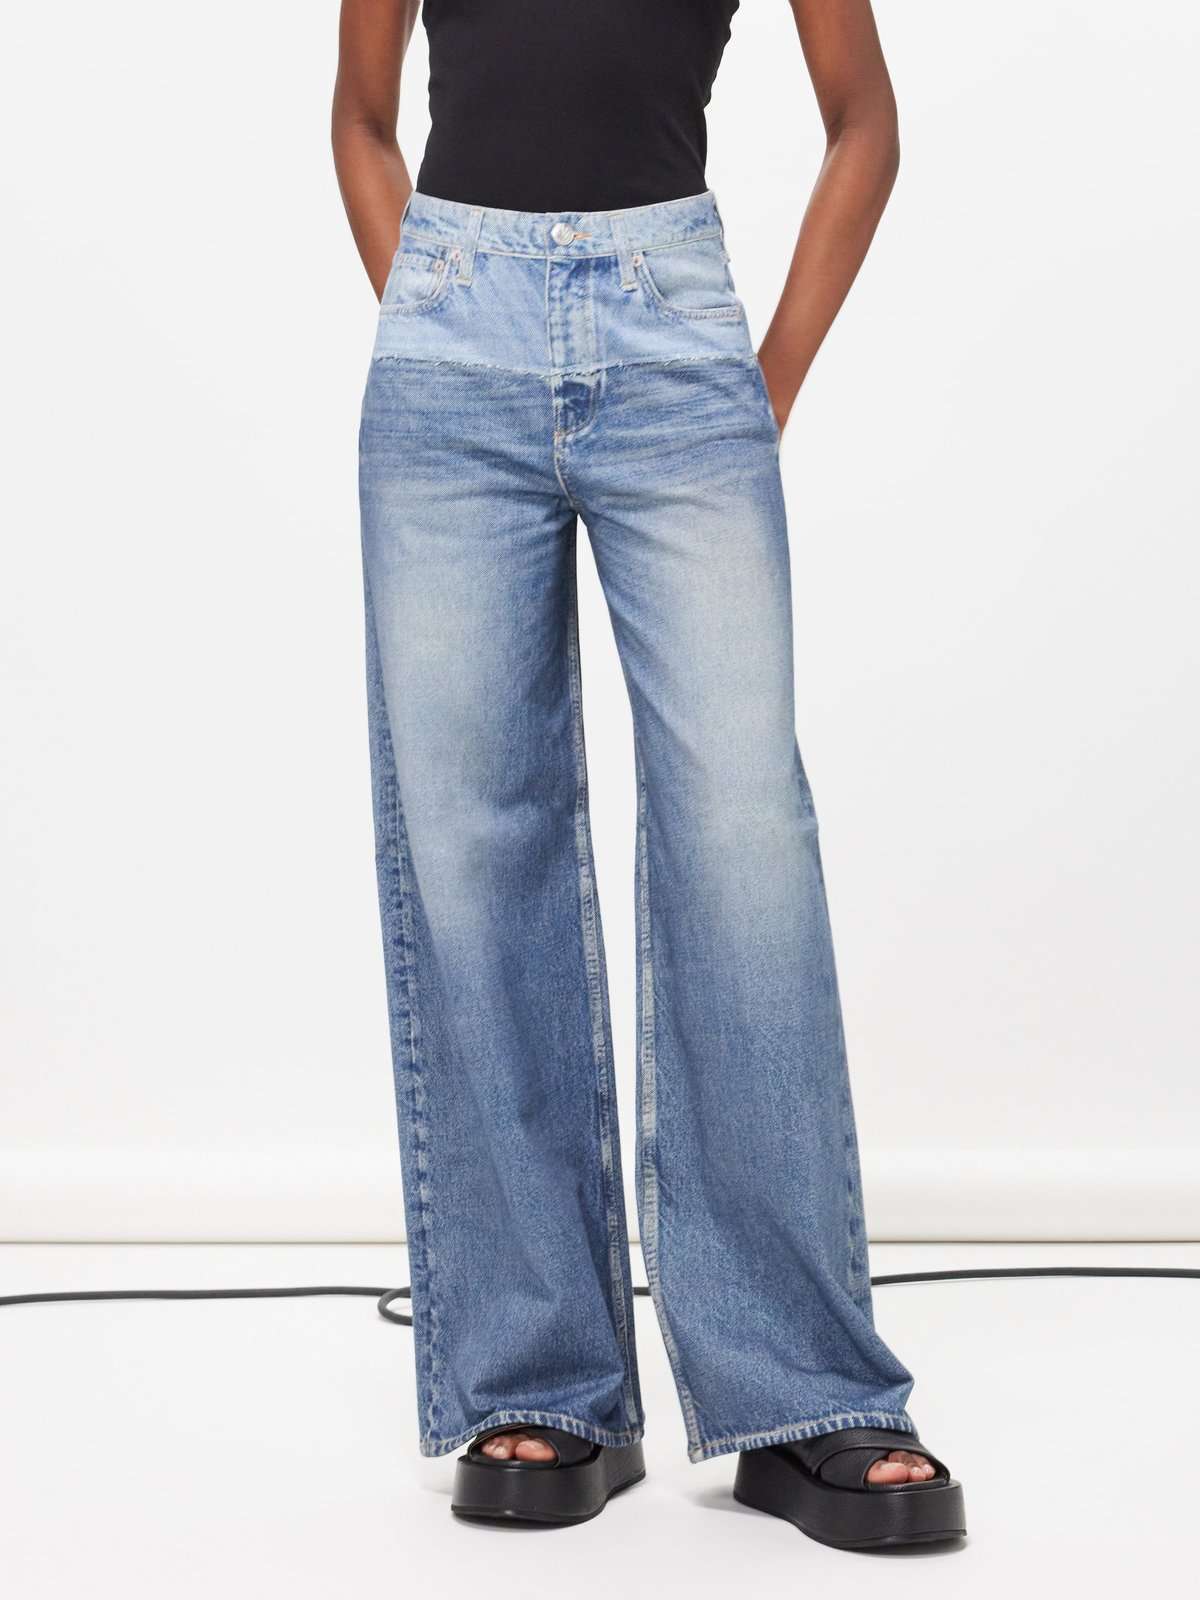 Двухцветные джинсы широкого кроя Sofie